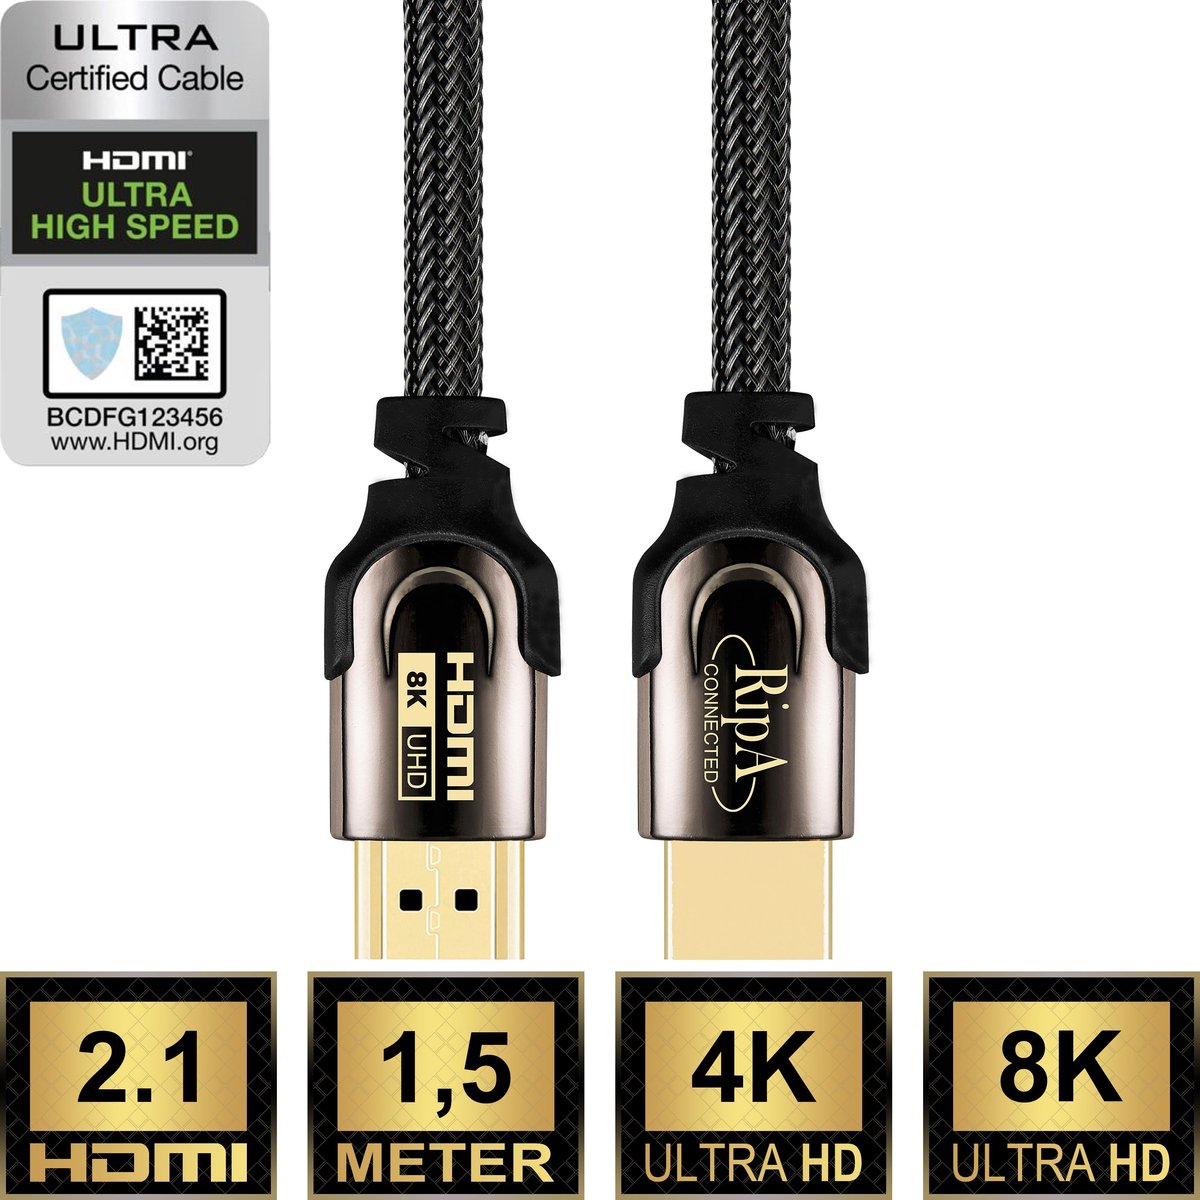 Ripa Connected HDMI Kabel 2.1 - 1,5M - UHD - Ultra High Speed 4K 8K - HDMI naar HDMI - Ripa Connected